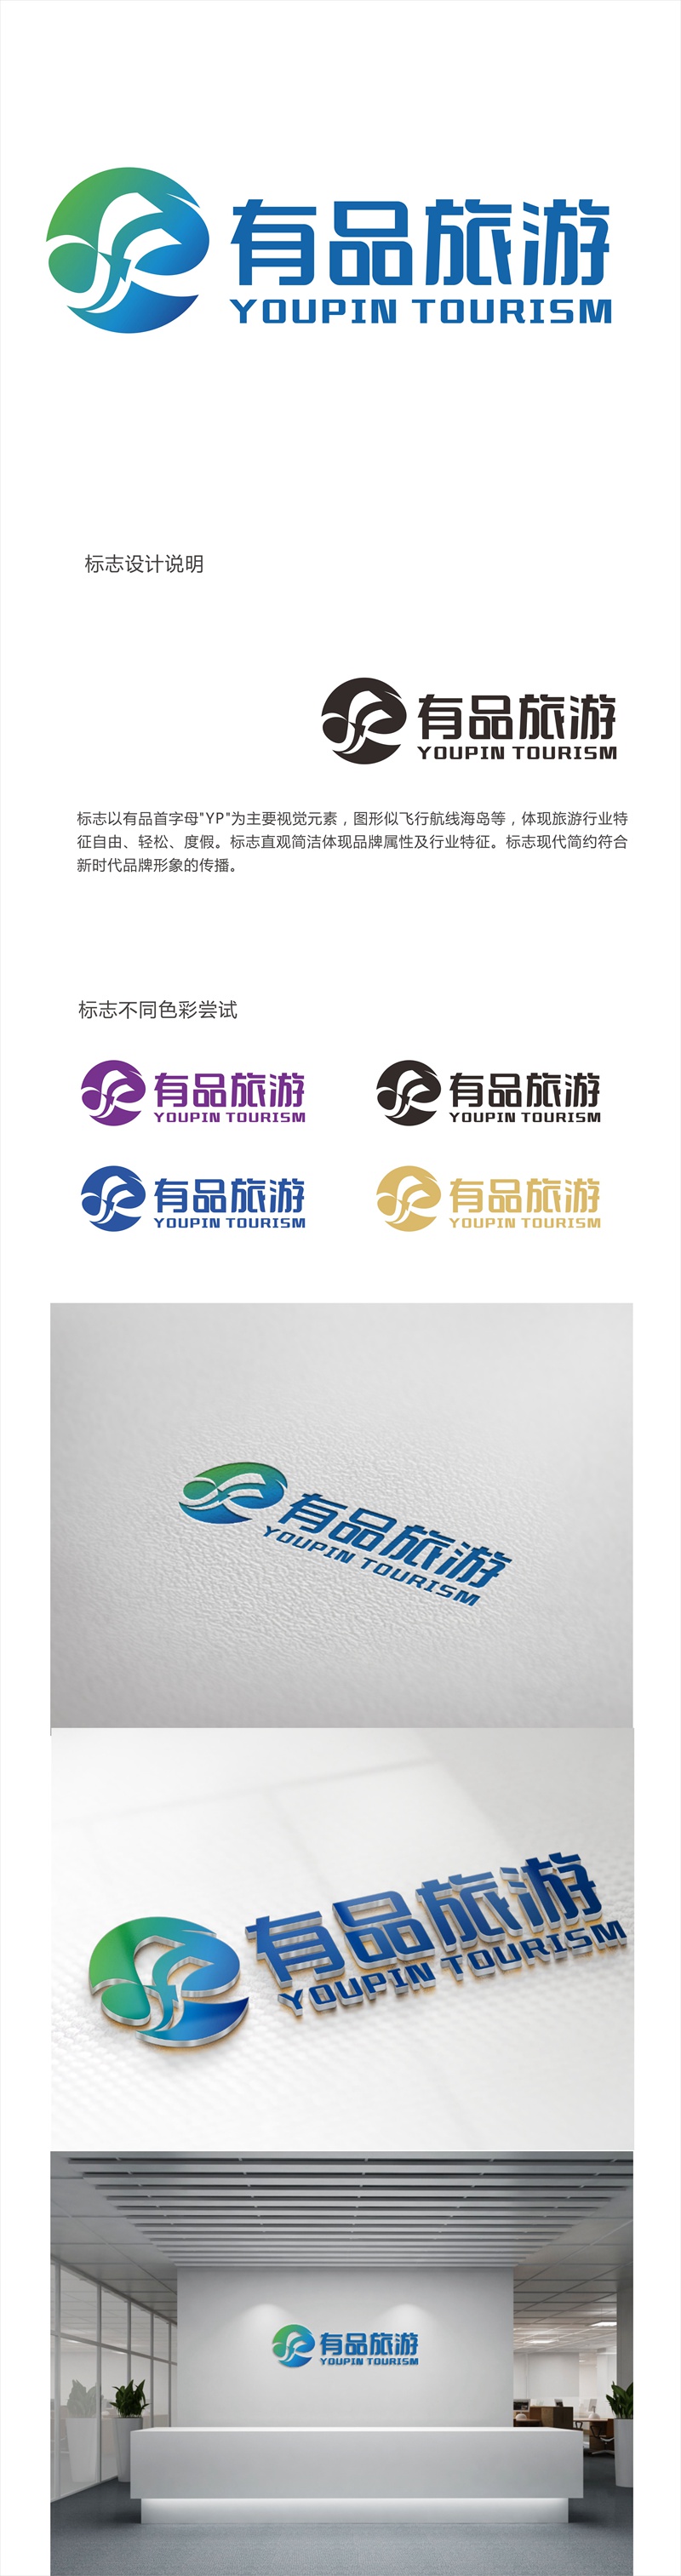 唐国强的有品旅游logo设计